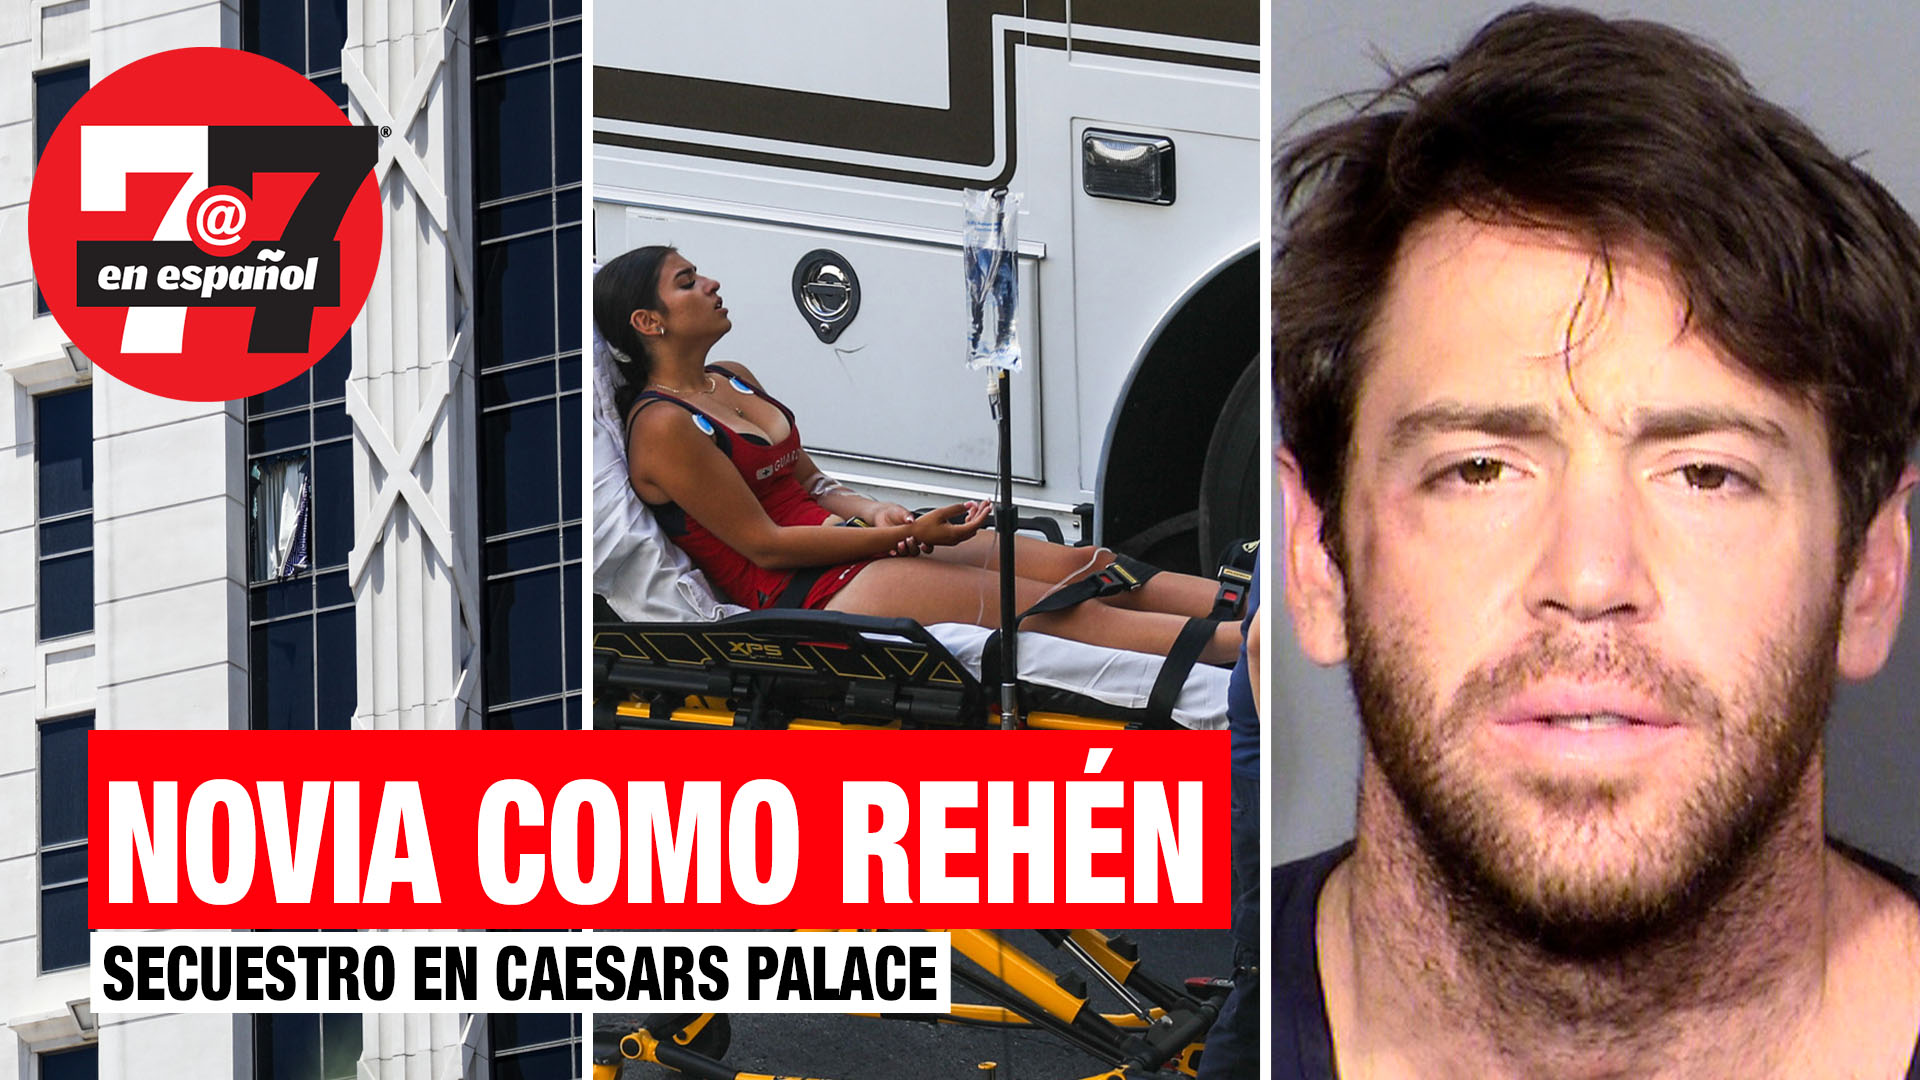 Noticias de Las Vegas | Amenazó con cortarle lengua a su novia en el Caesars Palace